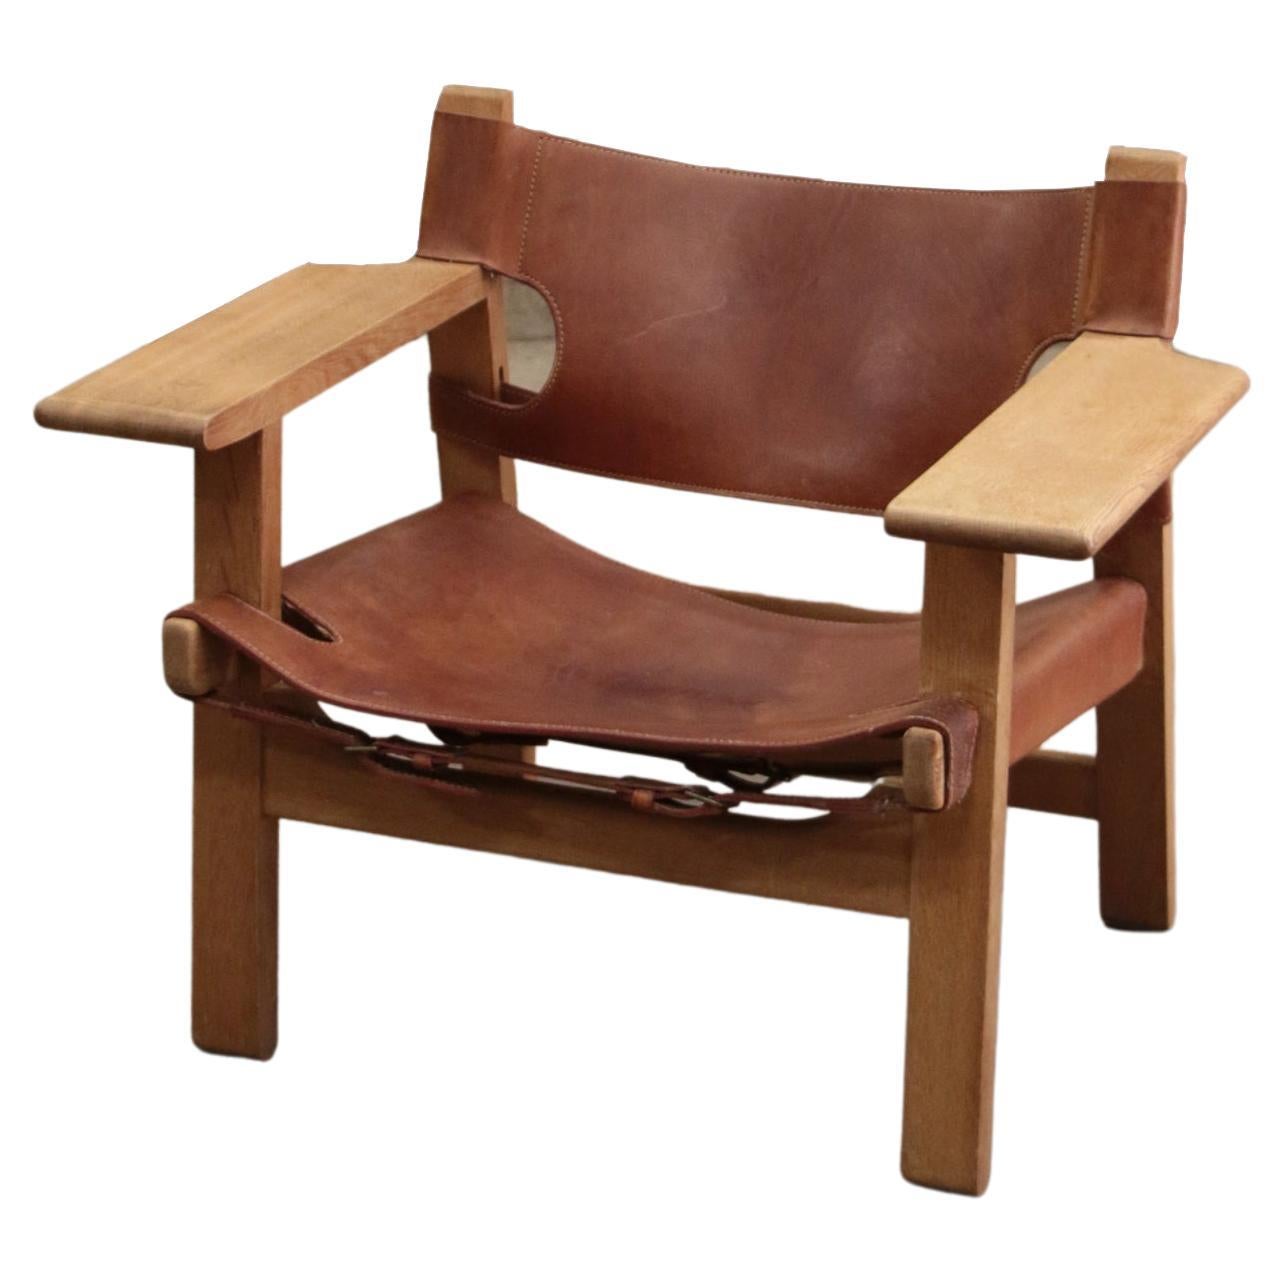 Design-Stuhl von Borge Mogensen, auch als Spanisch-Stuhl bezeichnet, 1960, Dänemark